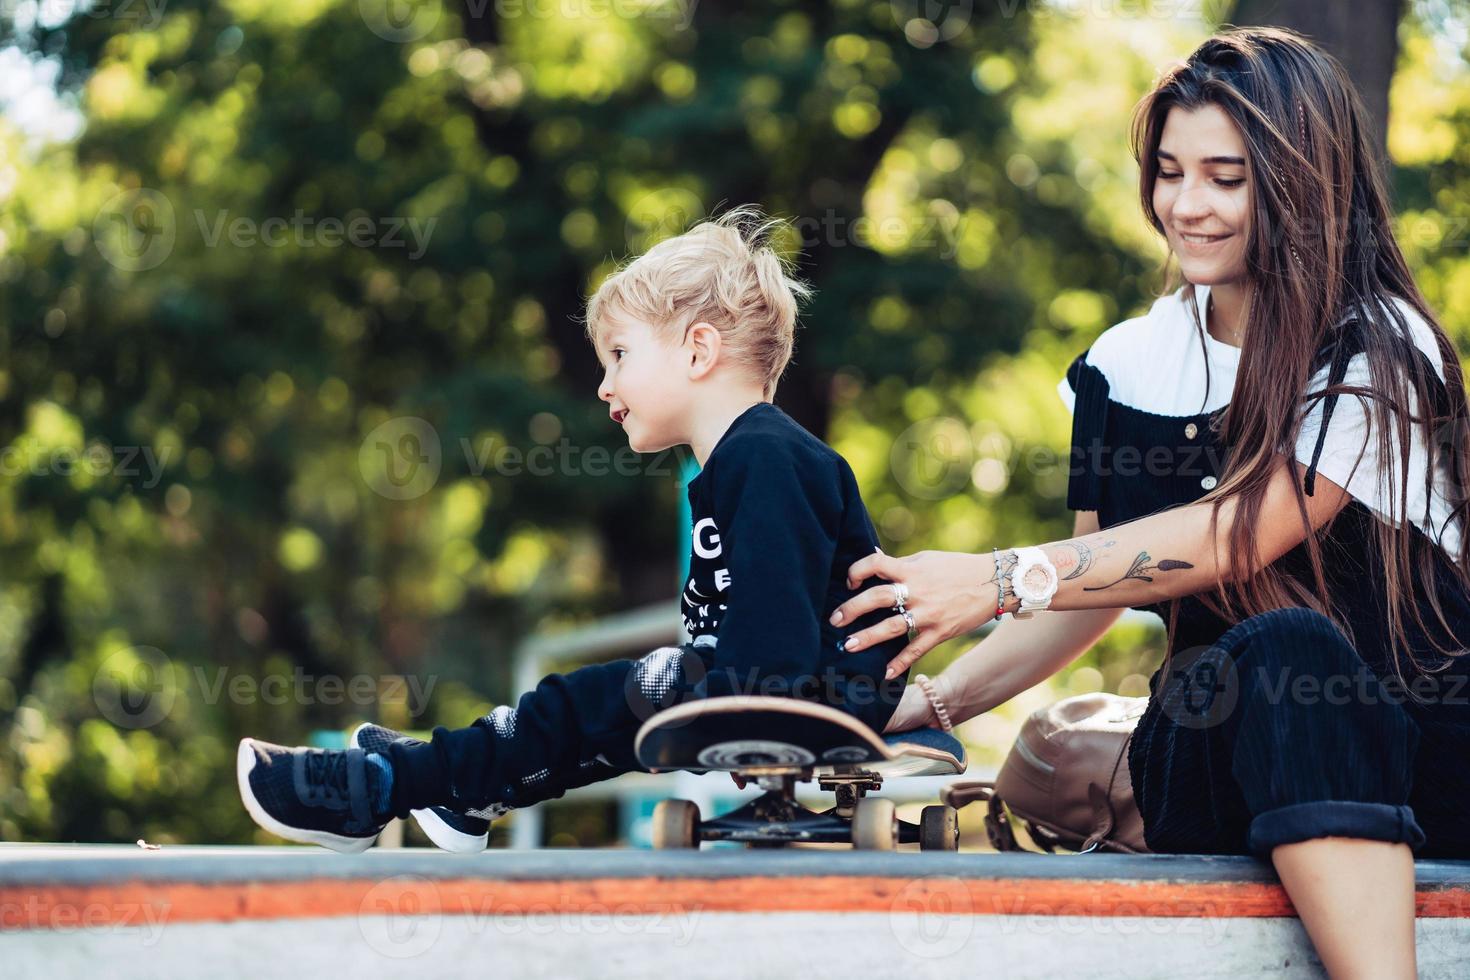 bela jovem hipster mãe e filho no skatepark foto